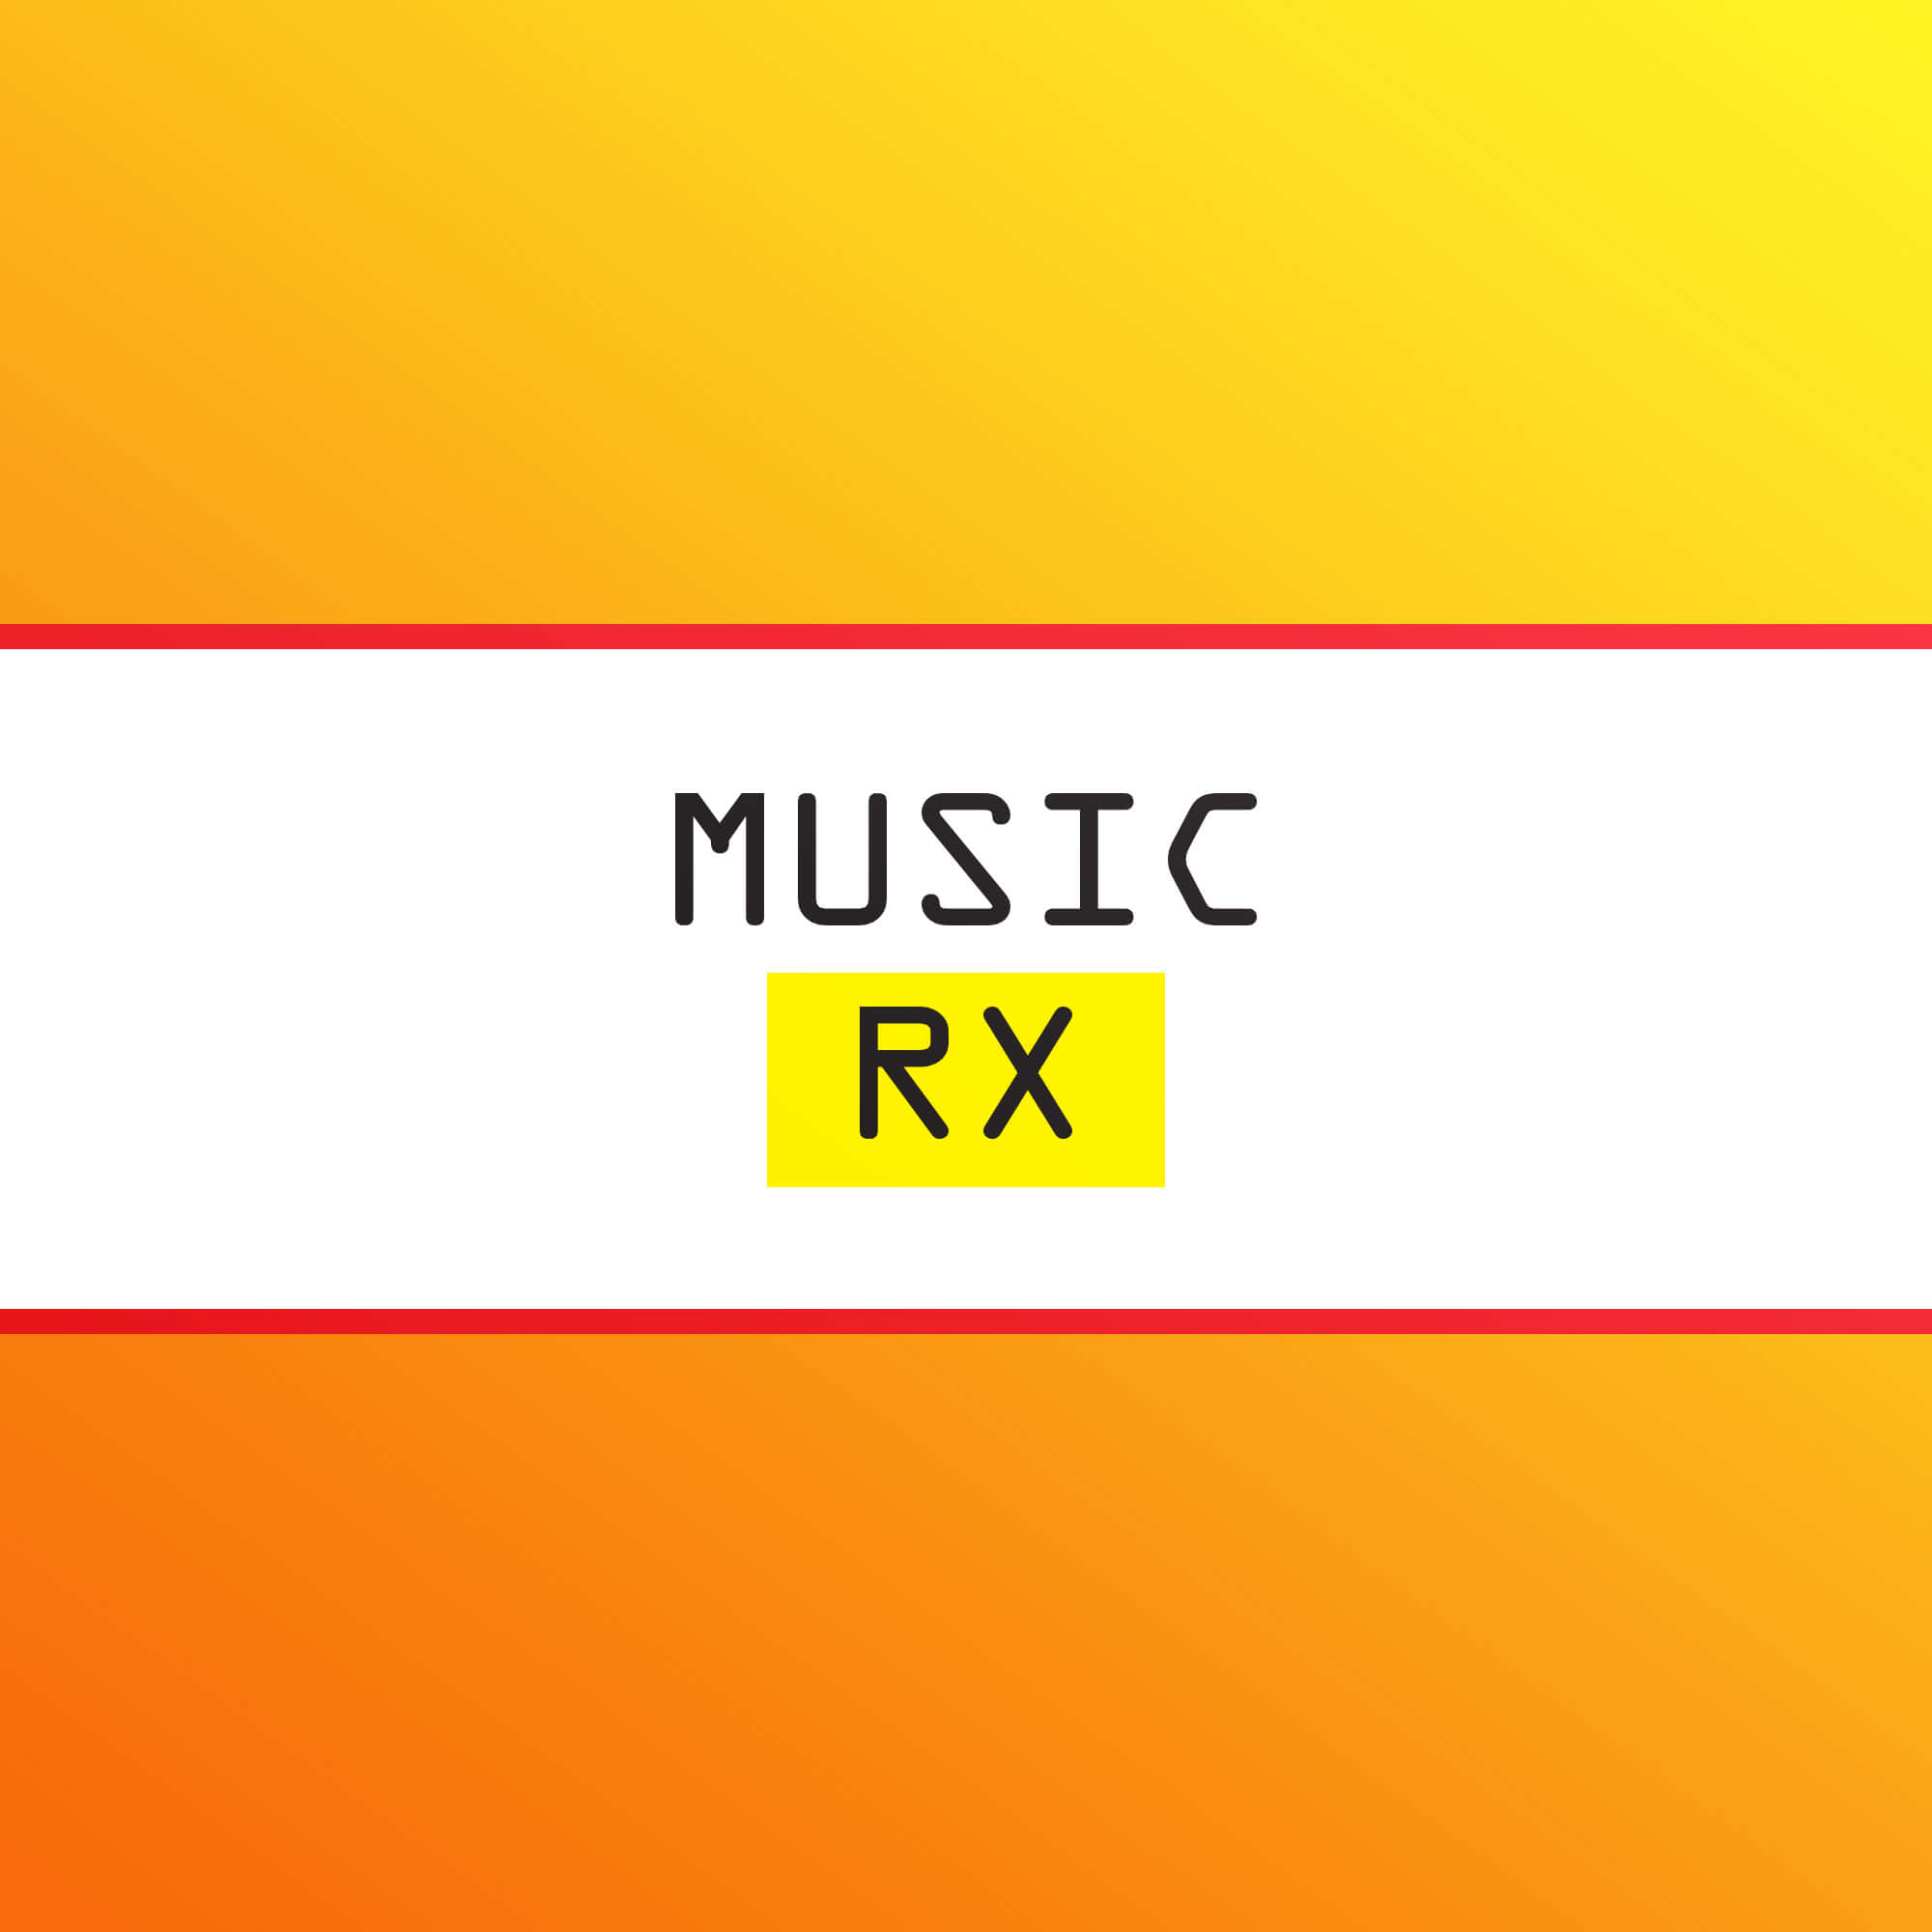 Music RX